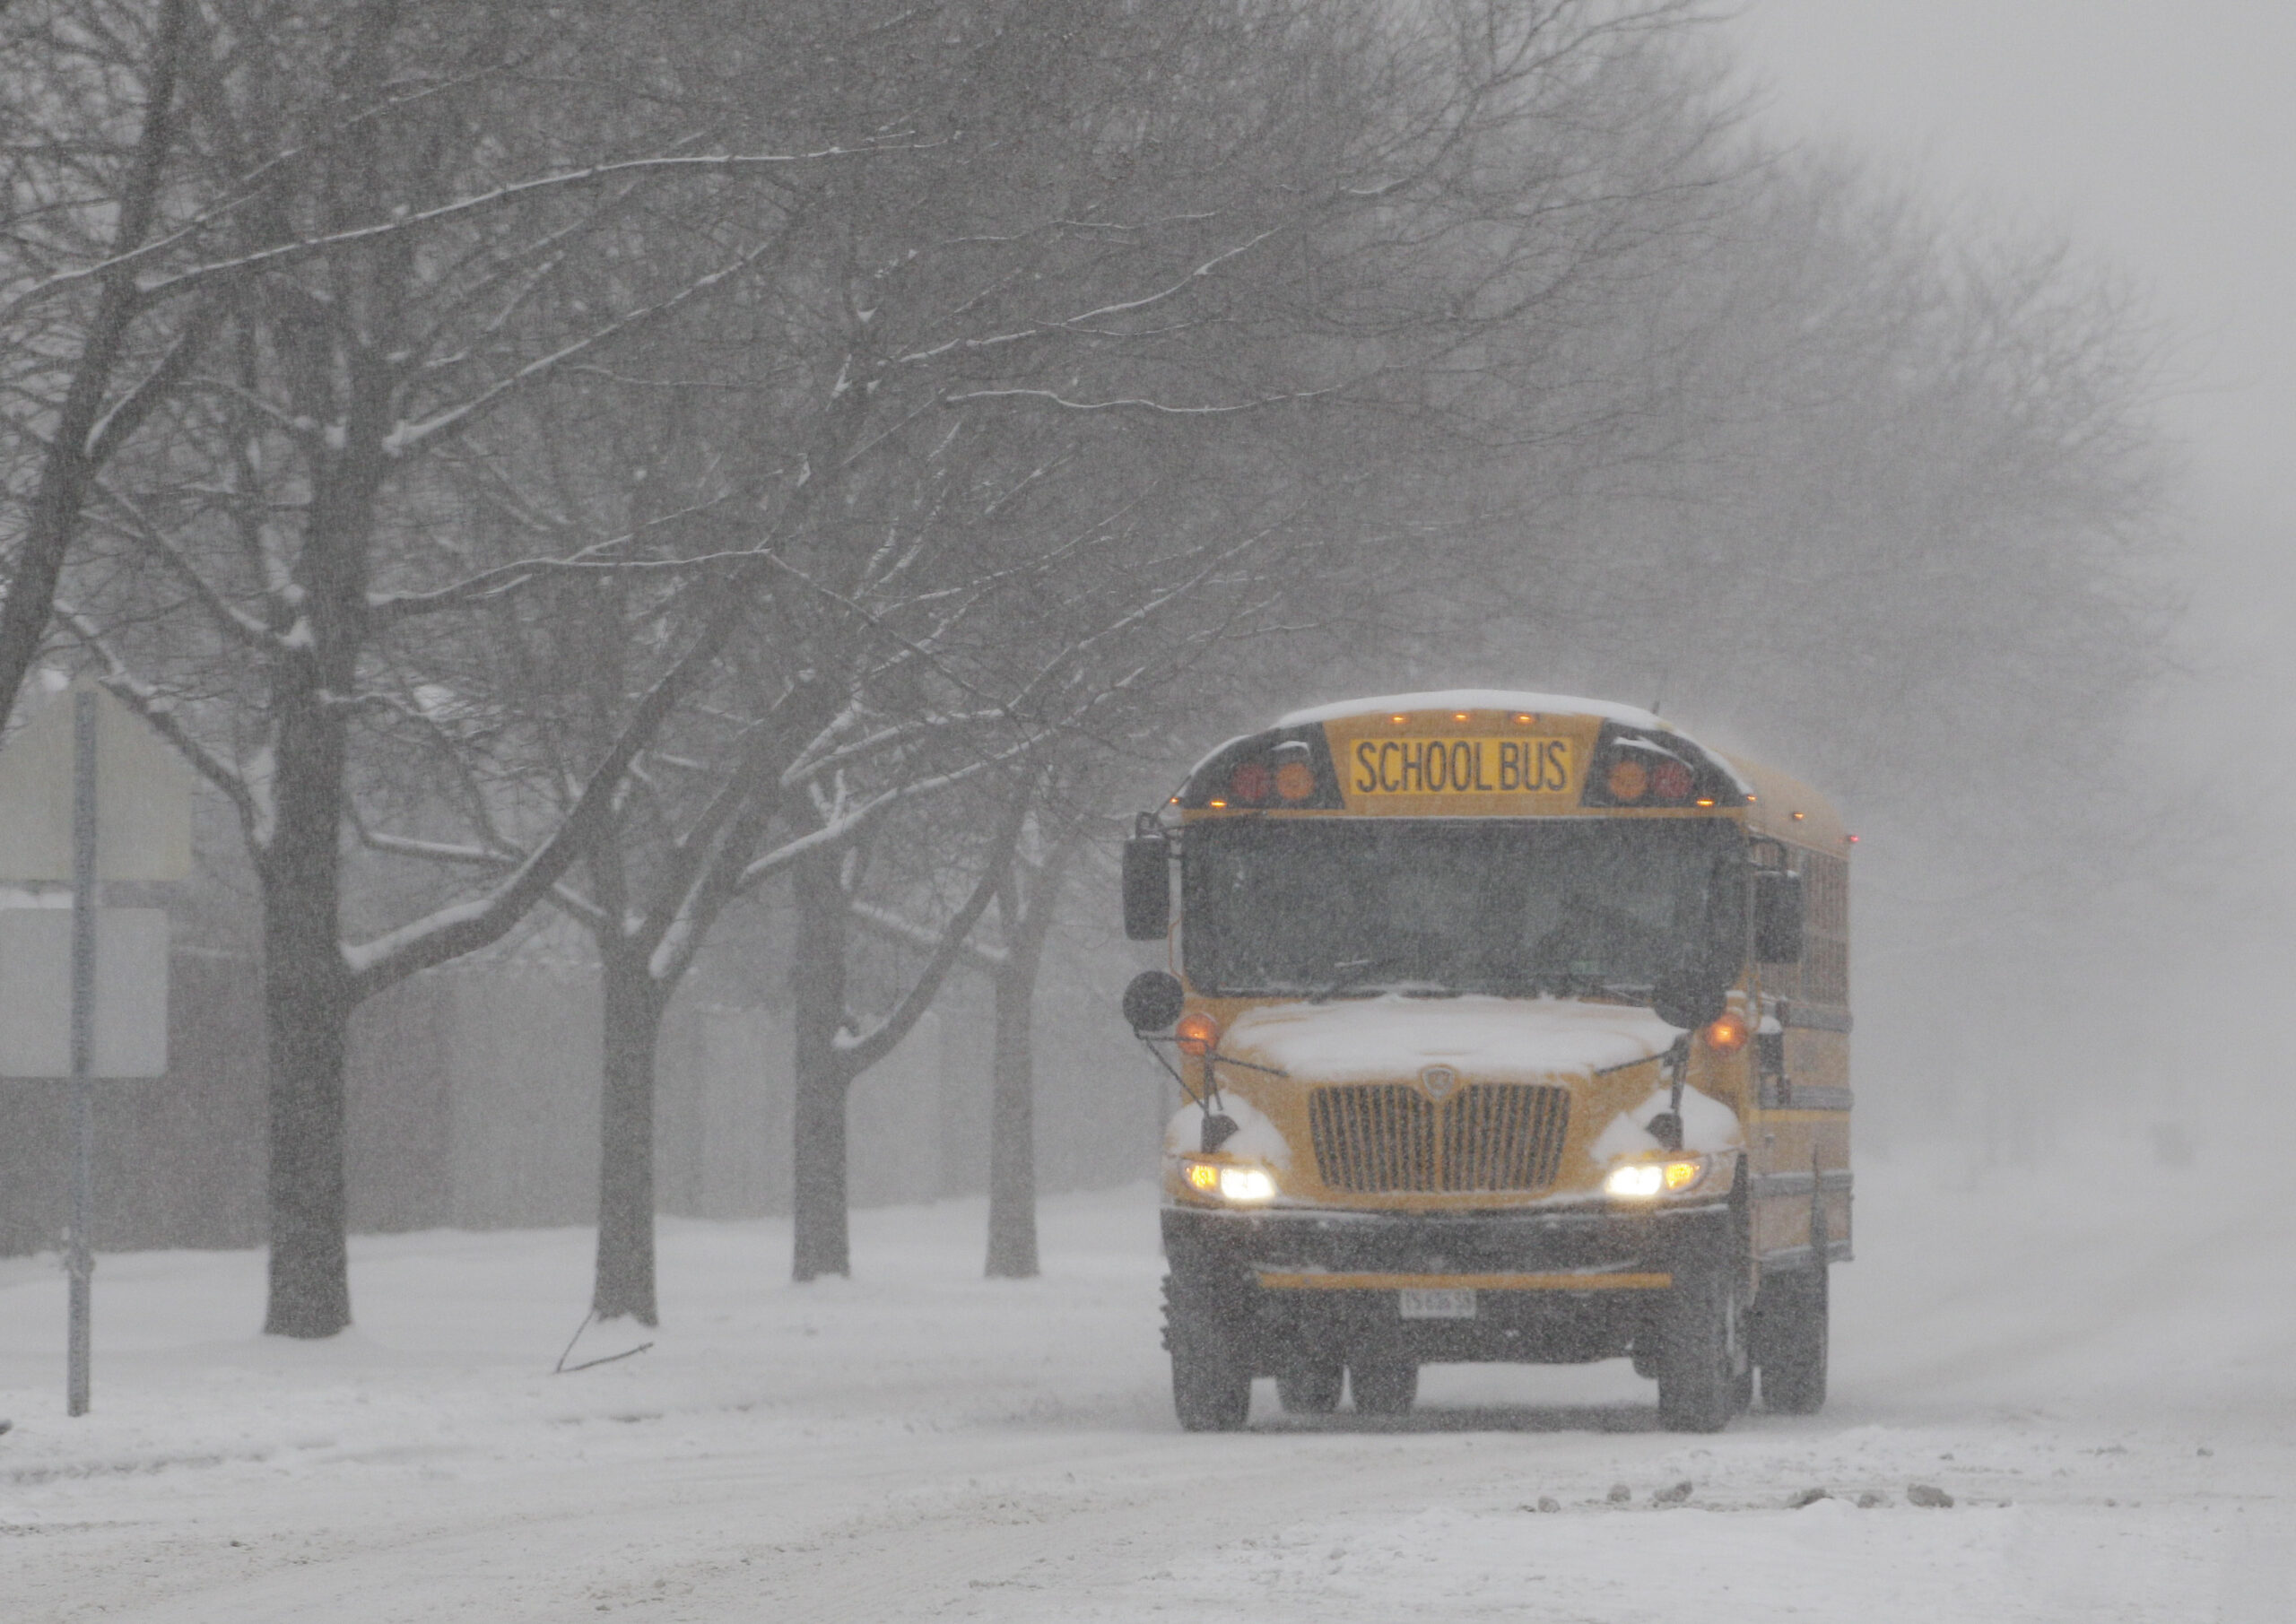 School bus in winter